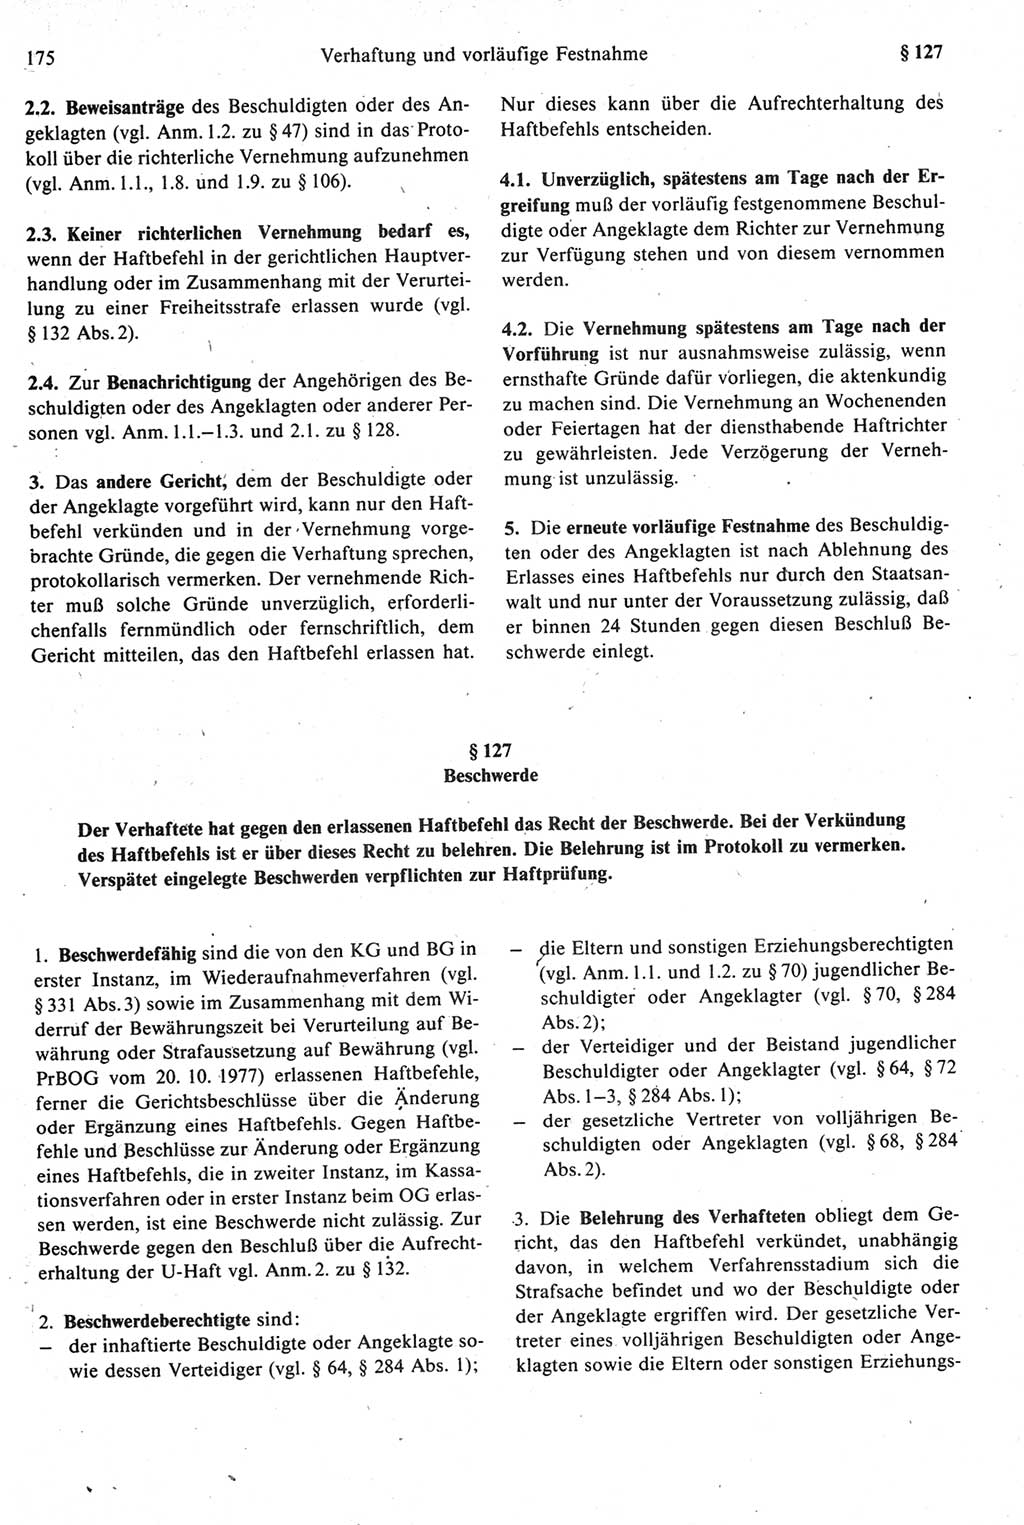 Strafprozeßrecht der DDR [Deutsche Demokratische Republik], Kommentar zur Strafprozeßordnung (StPO) 1987, Seite 175 (Strafprozeßr. DDR Komm. StPO 1987, S. 175)